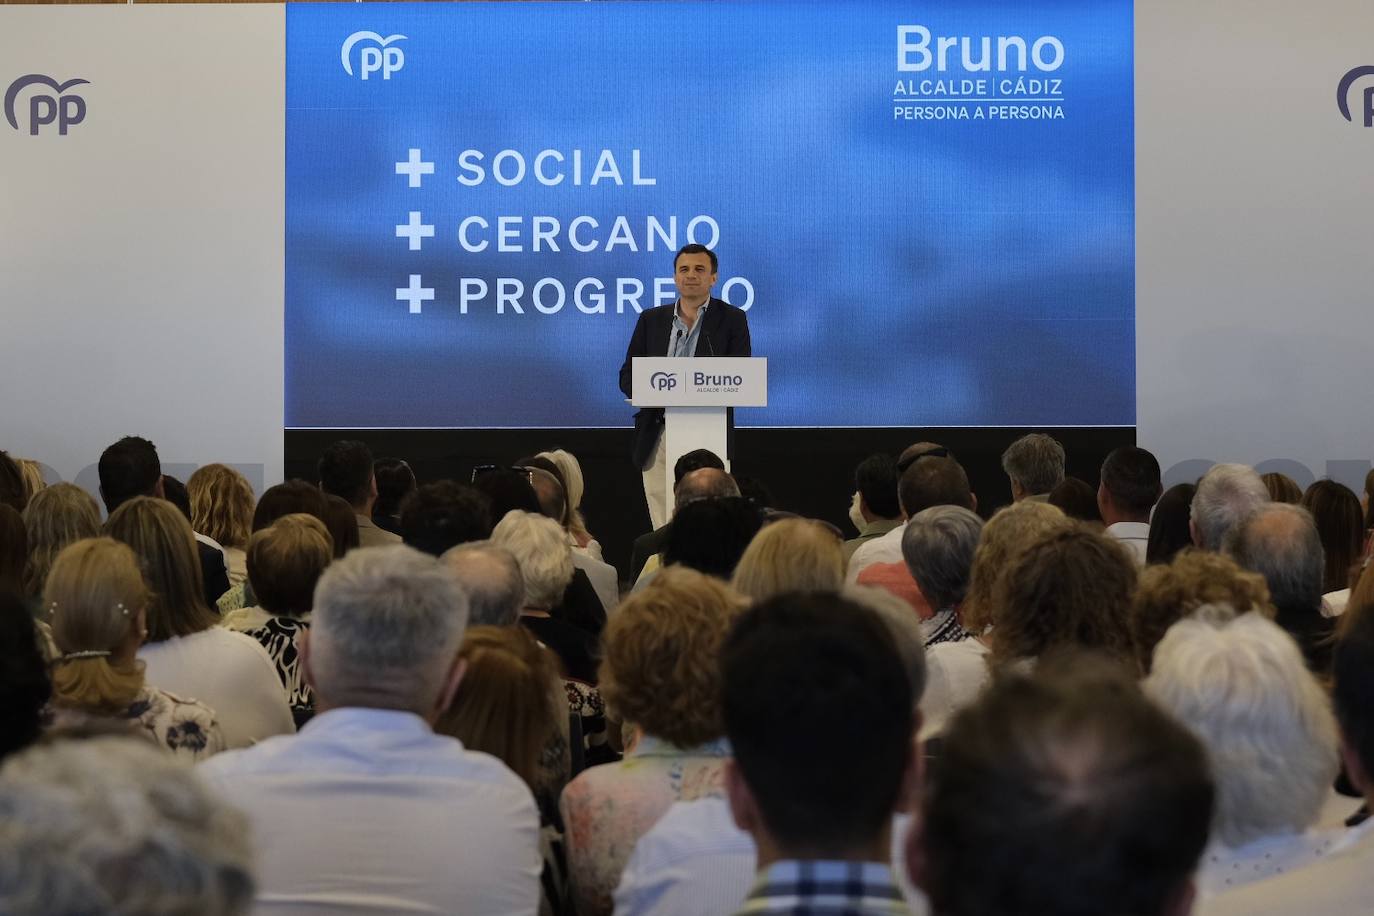 Fotos: las imágenes de la visita de Juanma Moreno a Cádiz par apoyar a Bruno